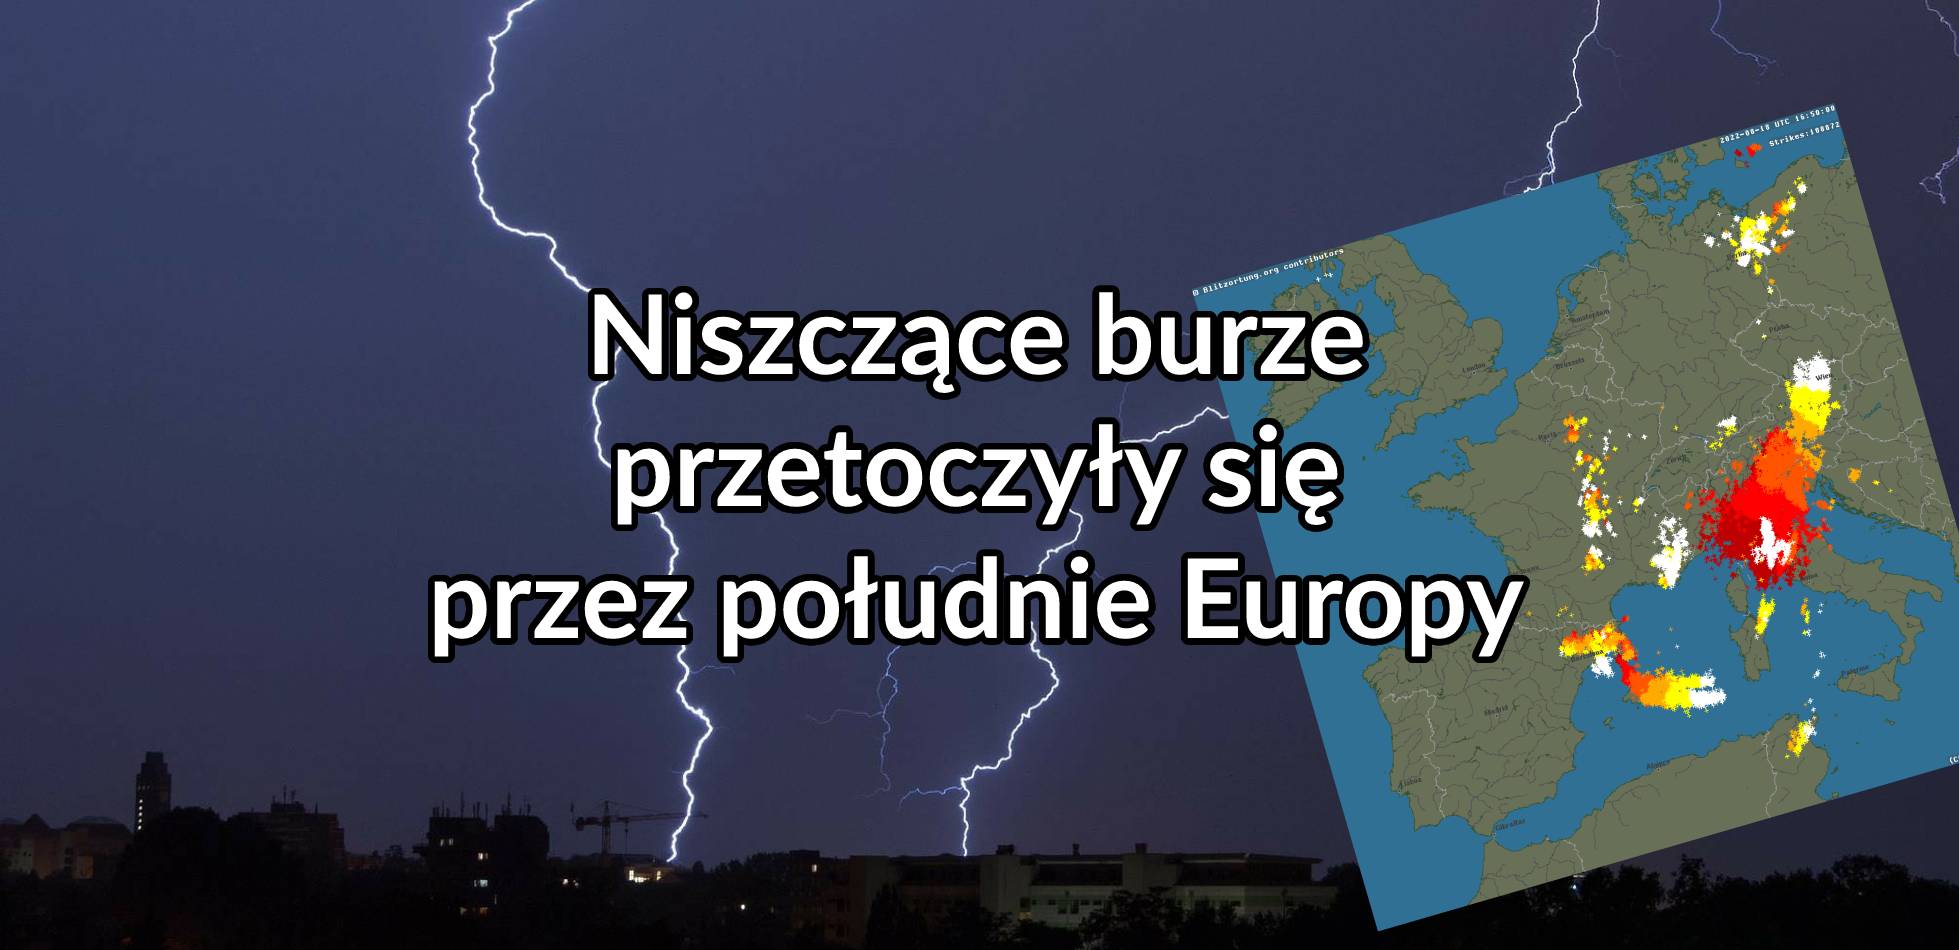 Niszczące burze przetoczyły się przez południe Europy